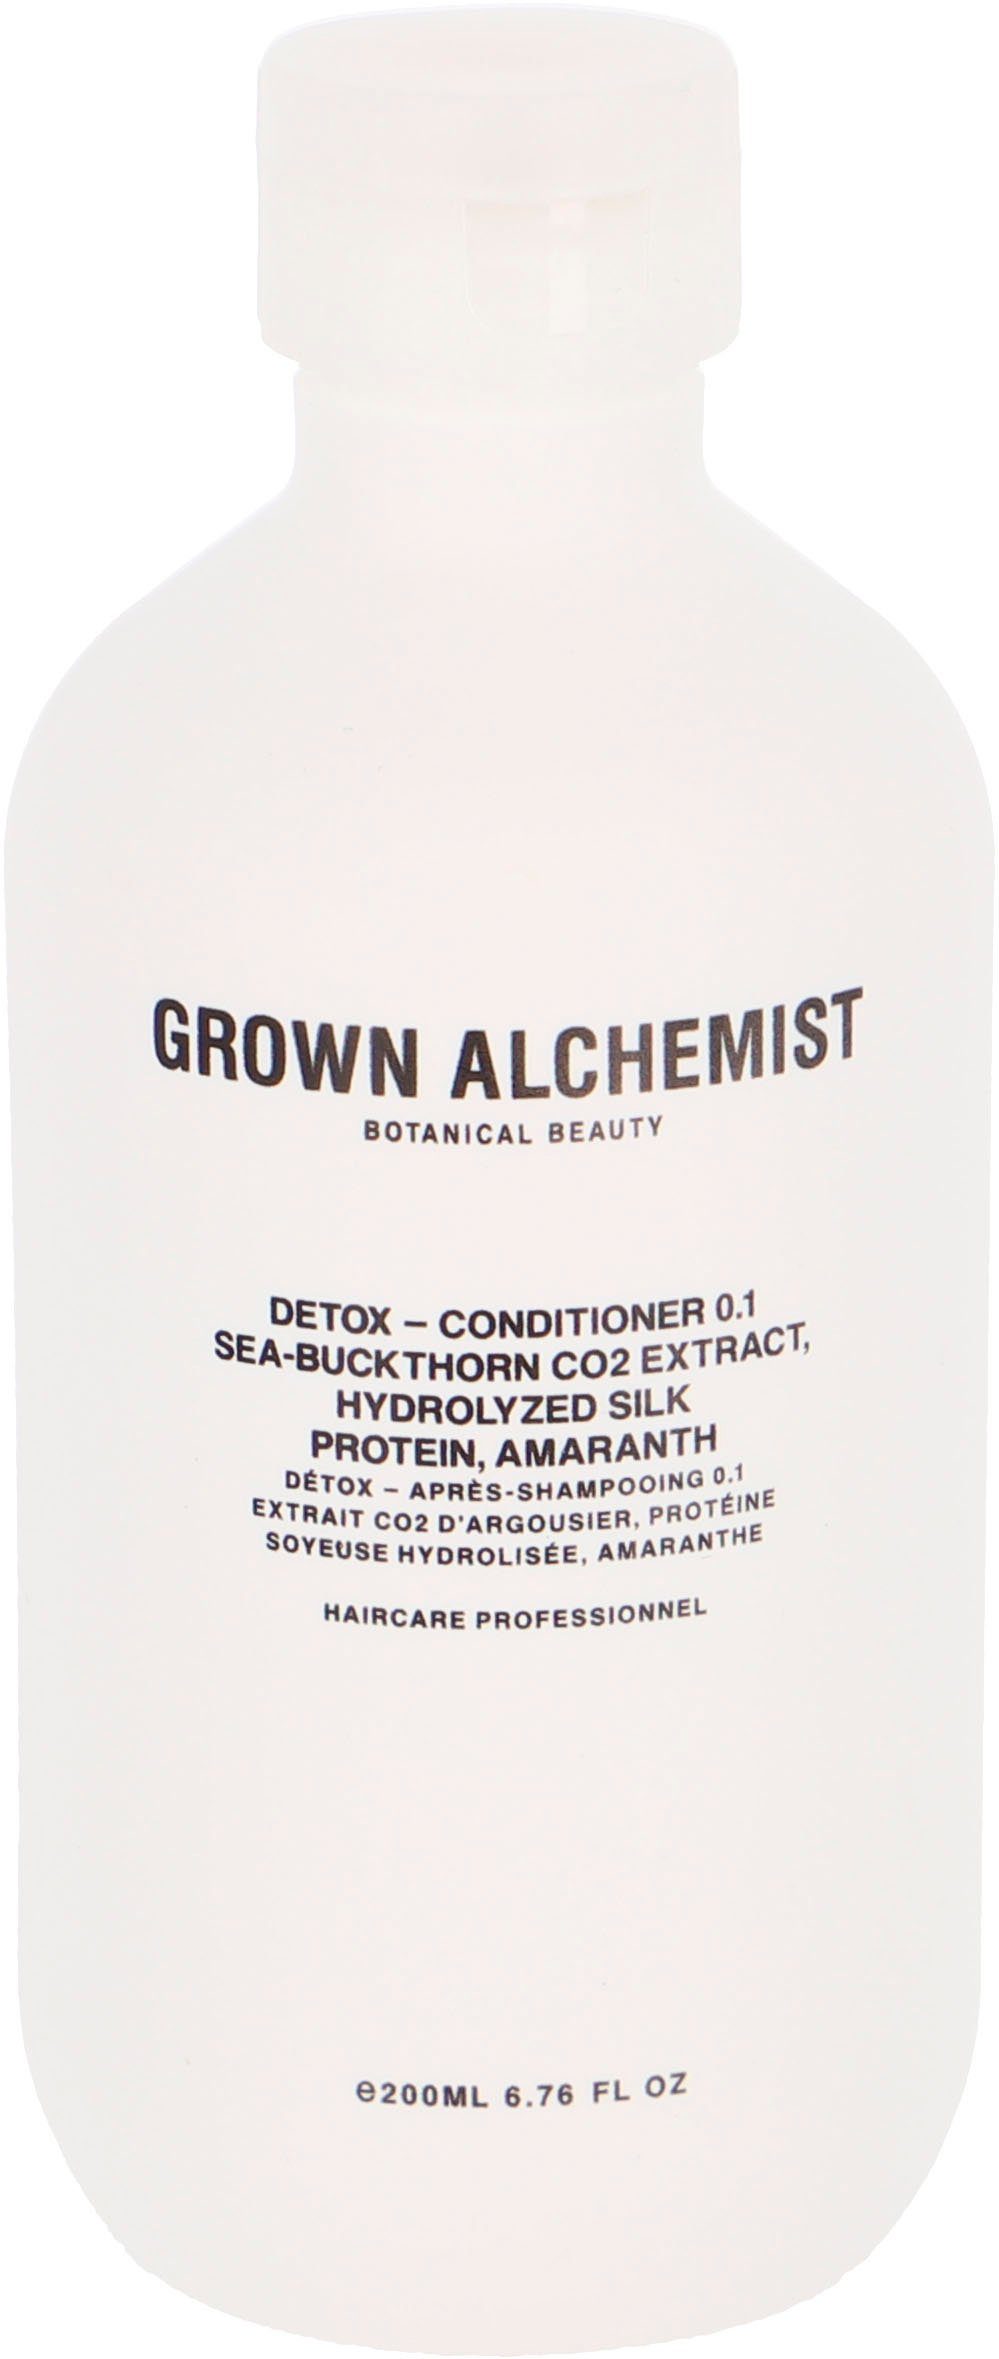 Auch supergünstig! GROWN ALCHEMIST Haarspülung Detox ml 500 Conditioner Amaranth Hydrolyzed CO2 Sea-Buckthorn 0.1, - Extract, Protein, Silk